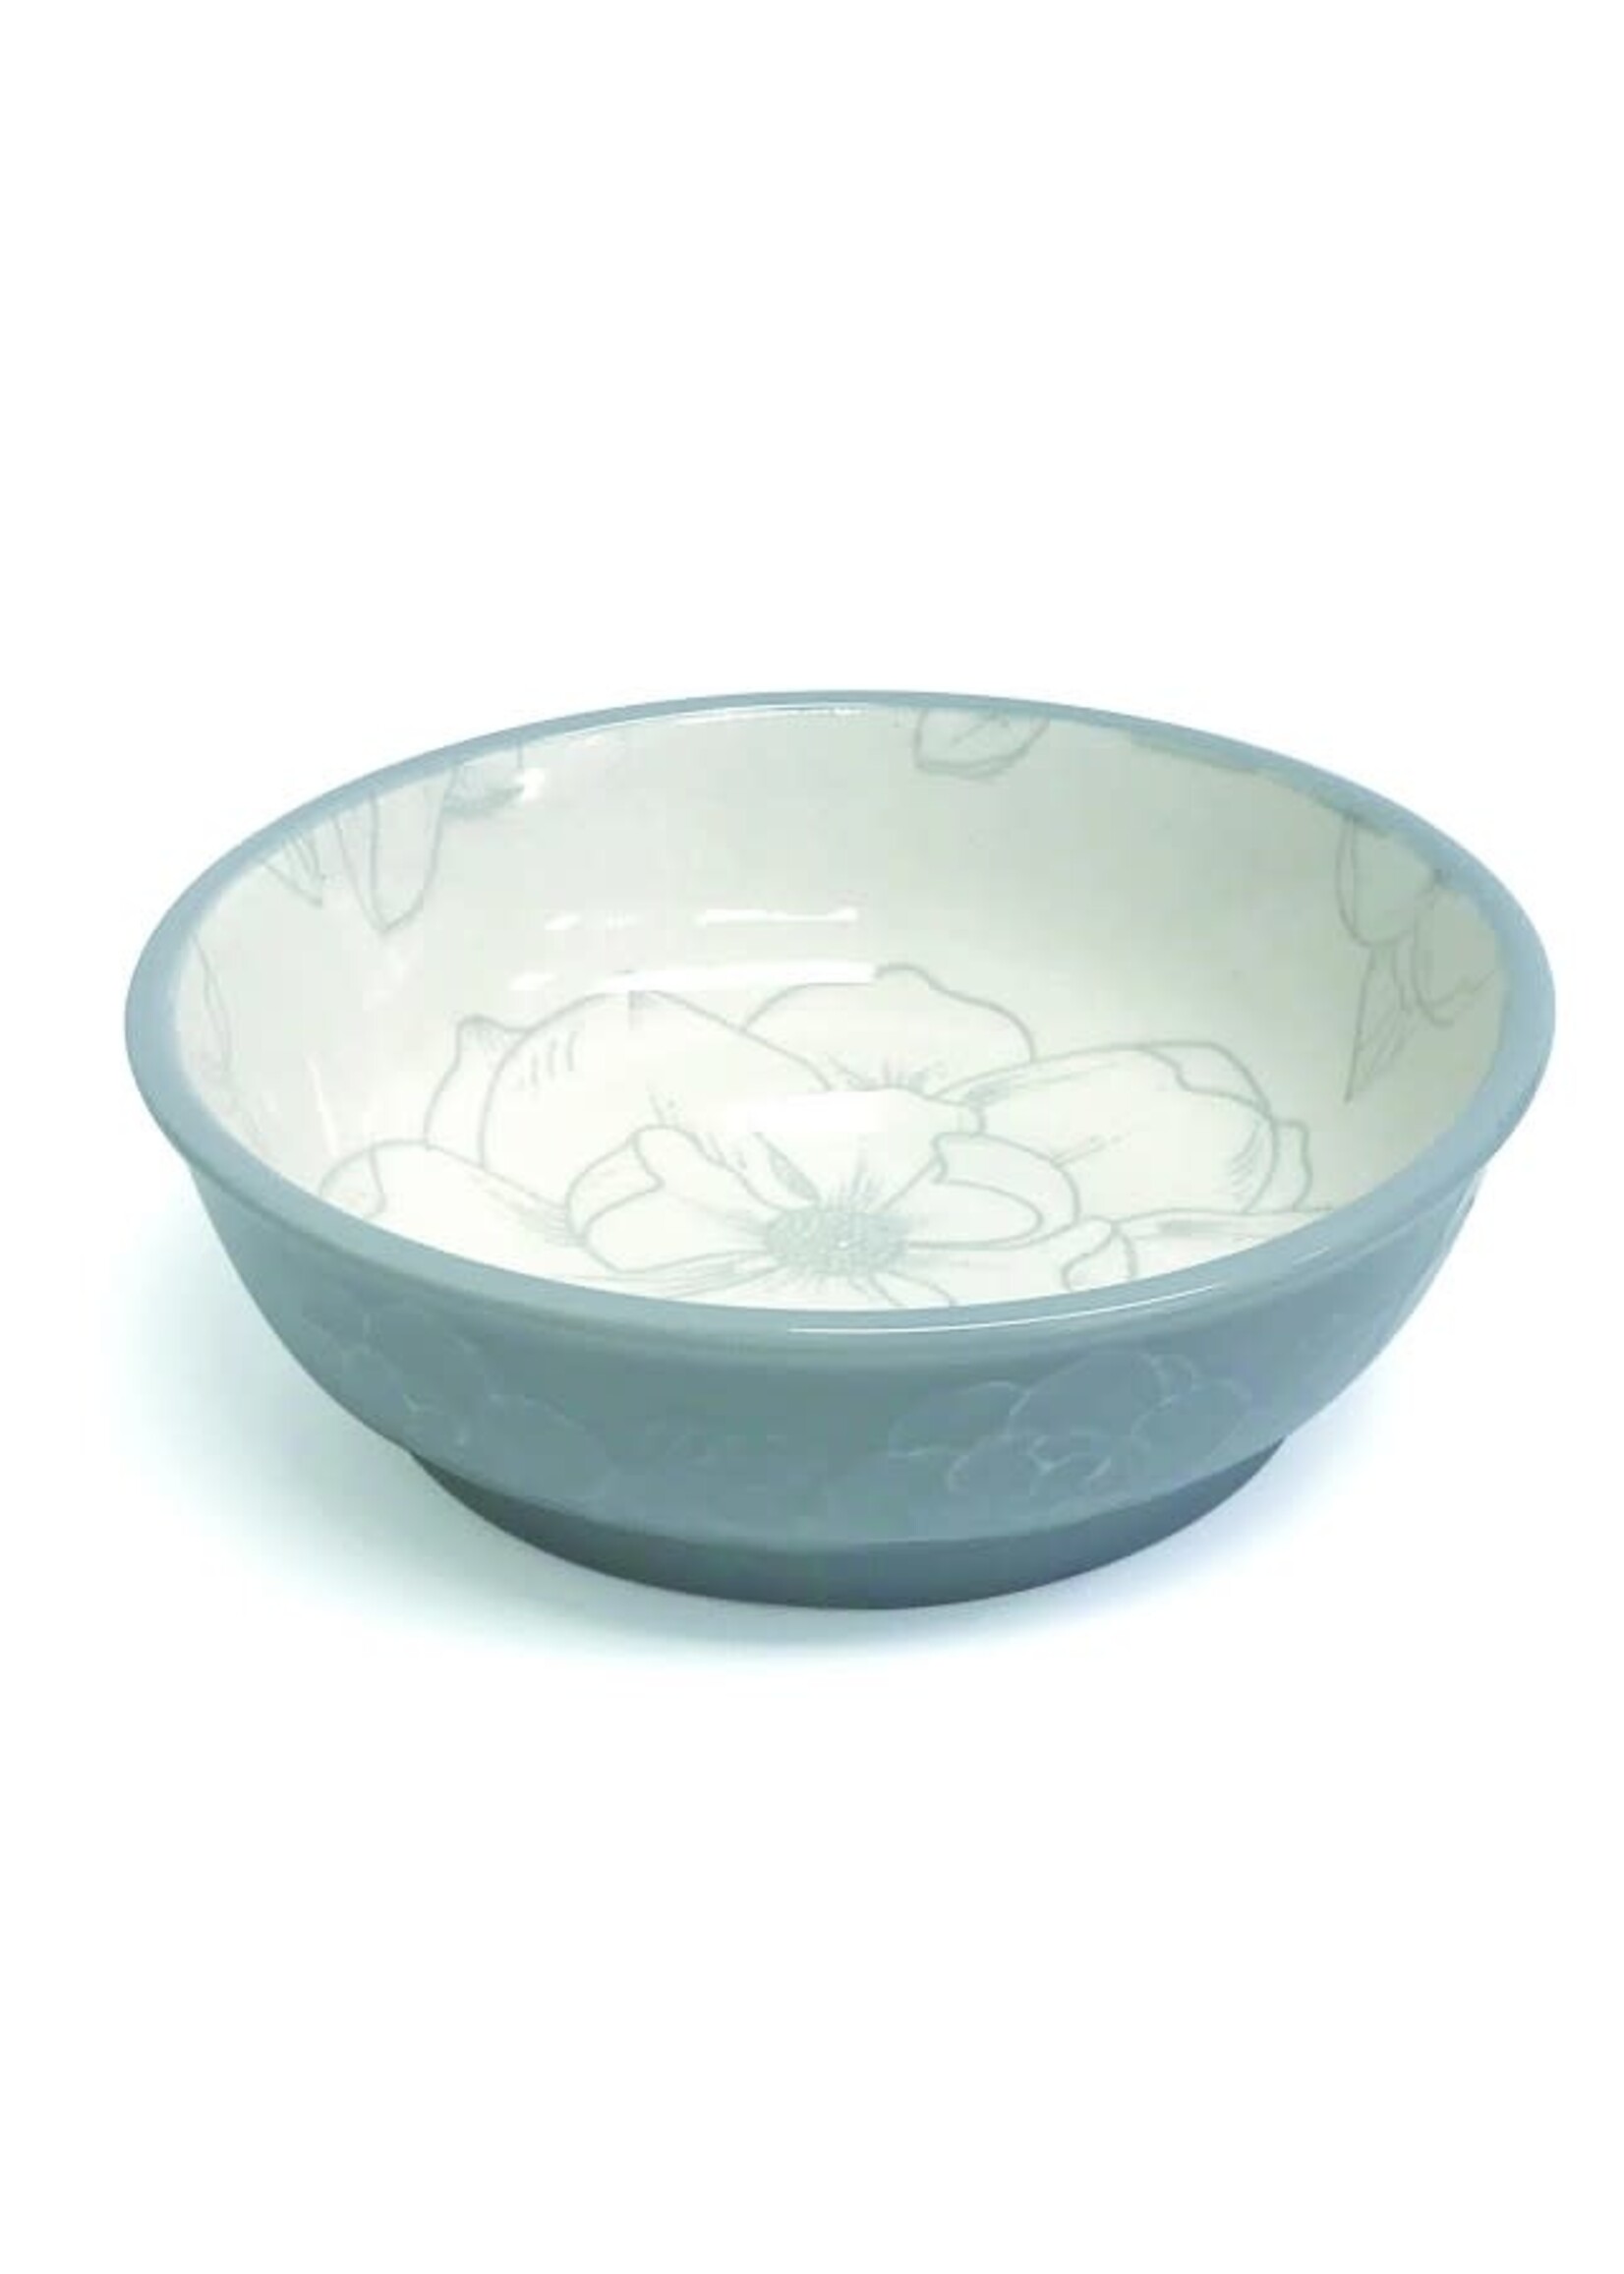 Pioneer Pet Ceramic Bowl- Large - Magnolia